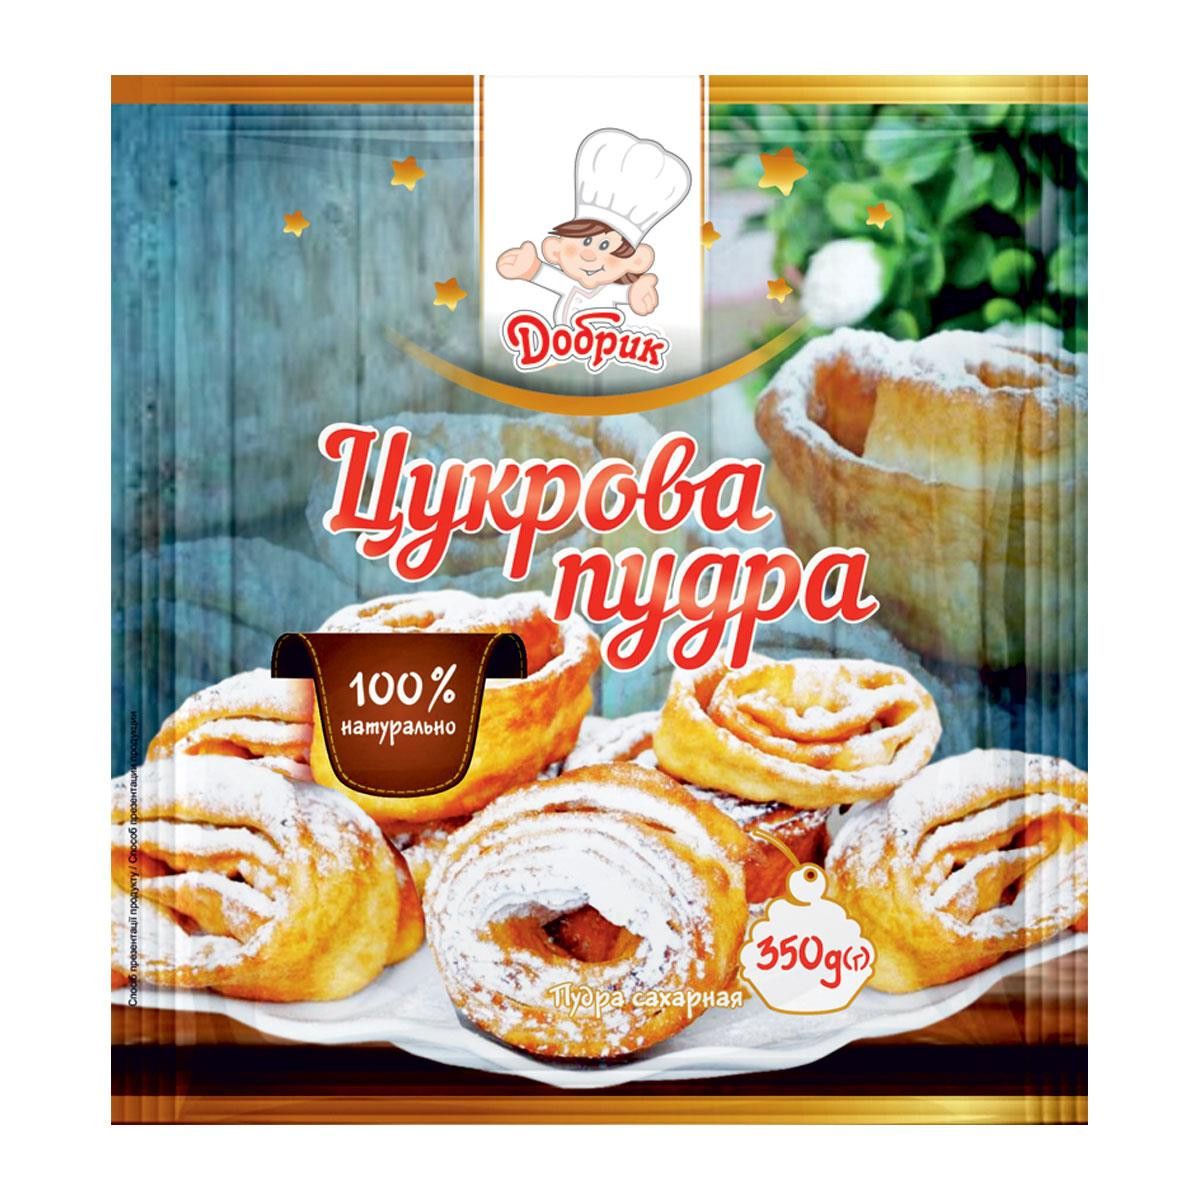 ⋗ Сахарная пудра Dobryk, 350г купить в Украине ➛ CakeShop.com.ua, фото